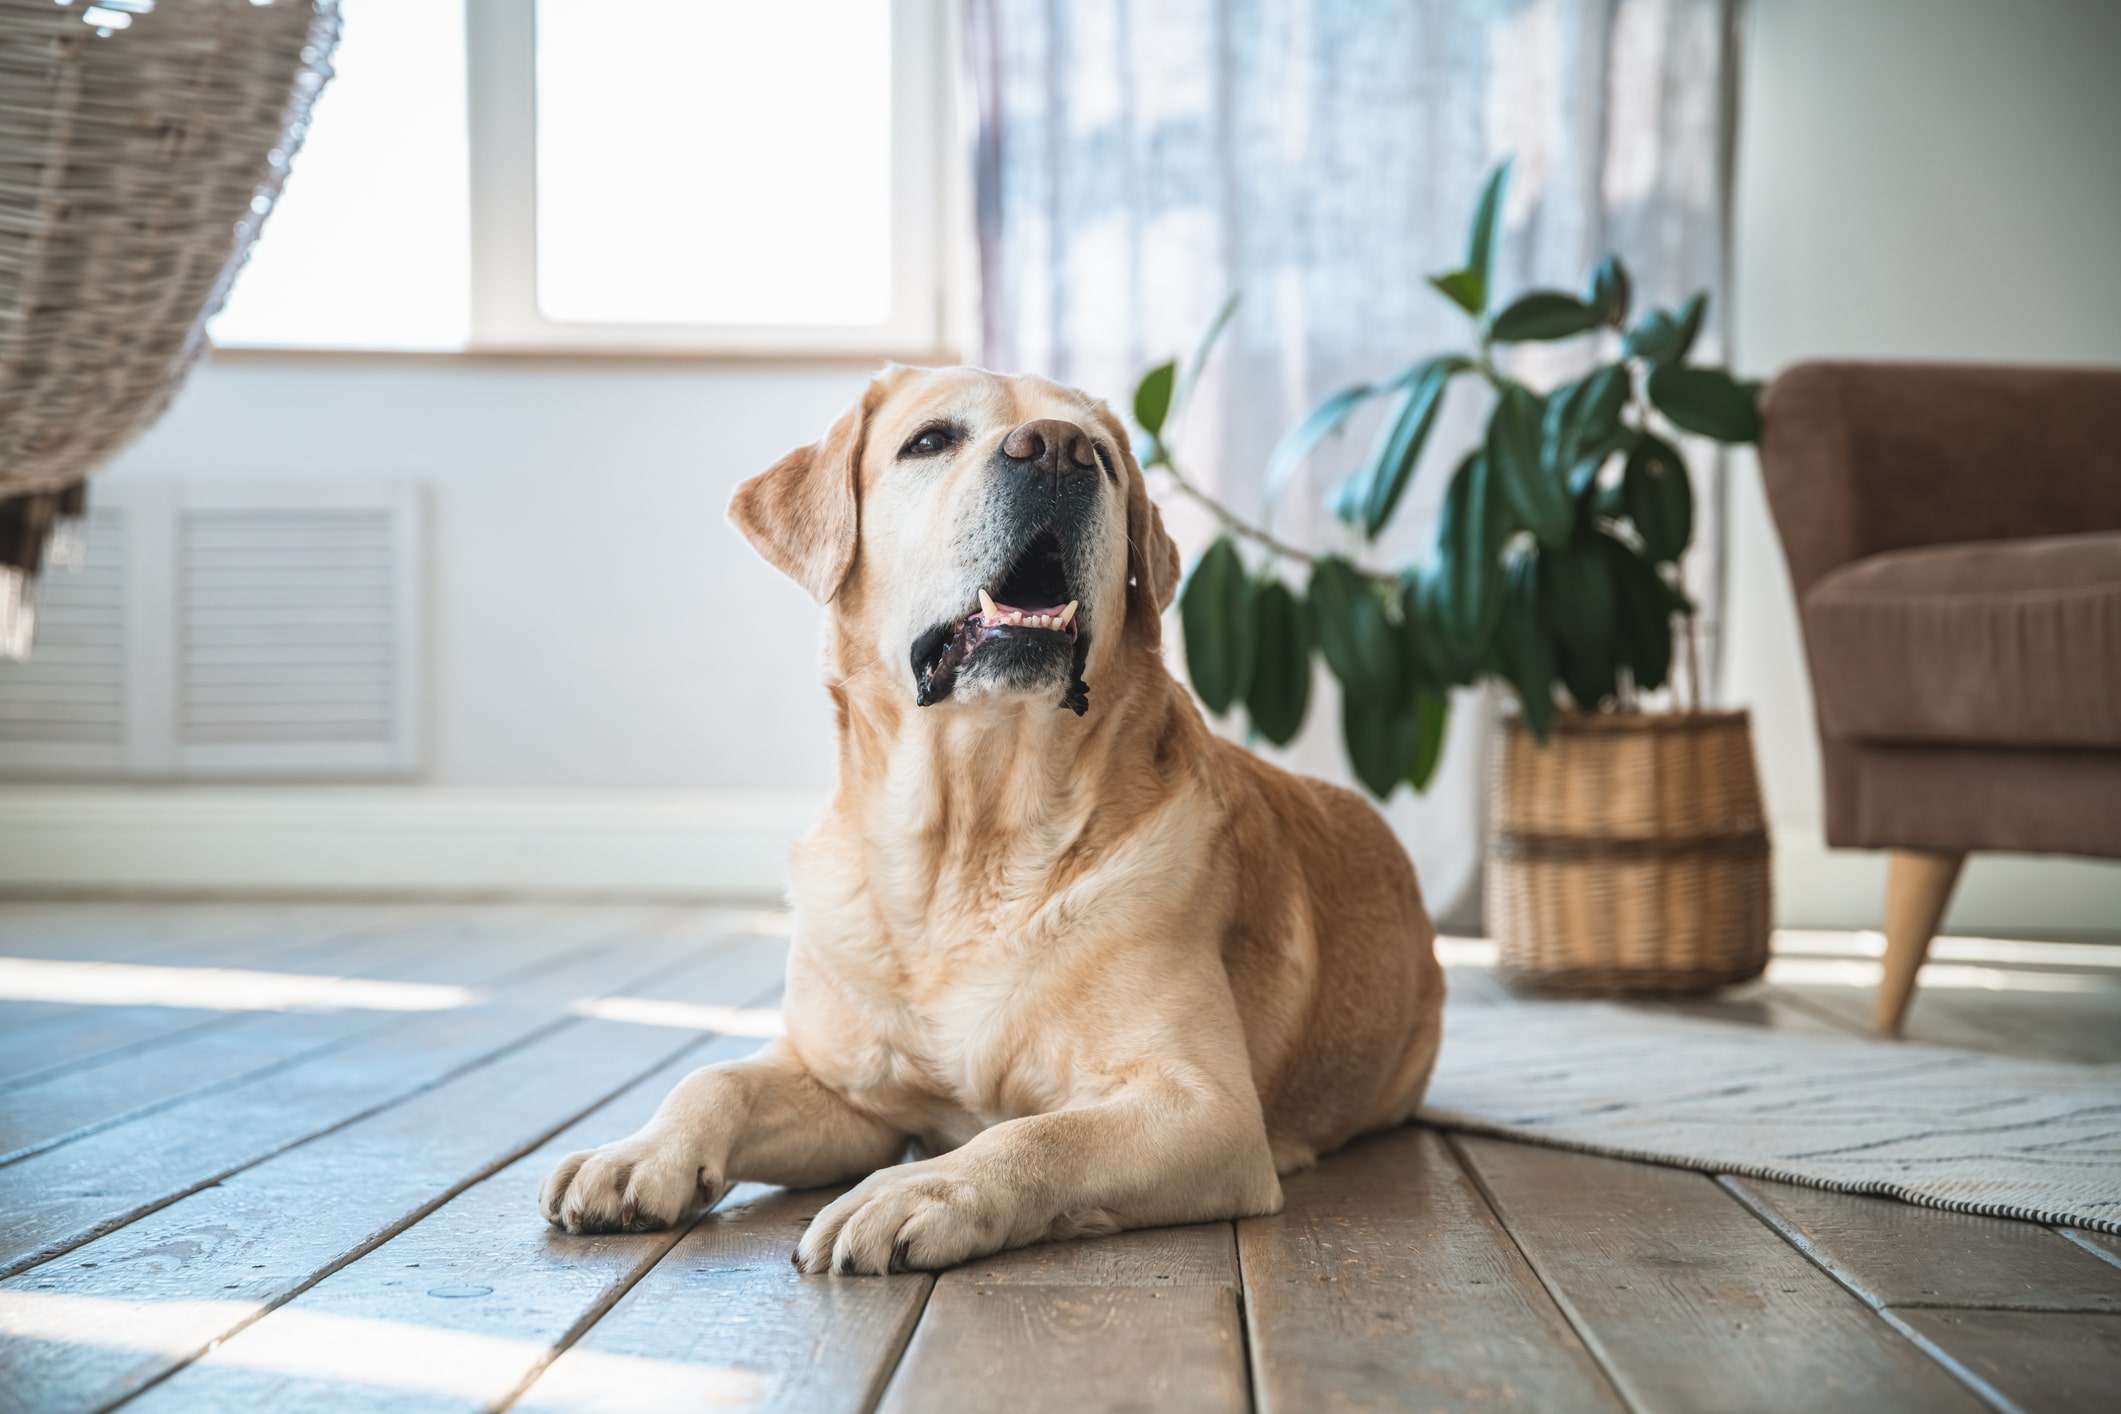 Crocchette per cani sterilizzati: gusto e salute in equilibrio